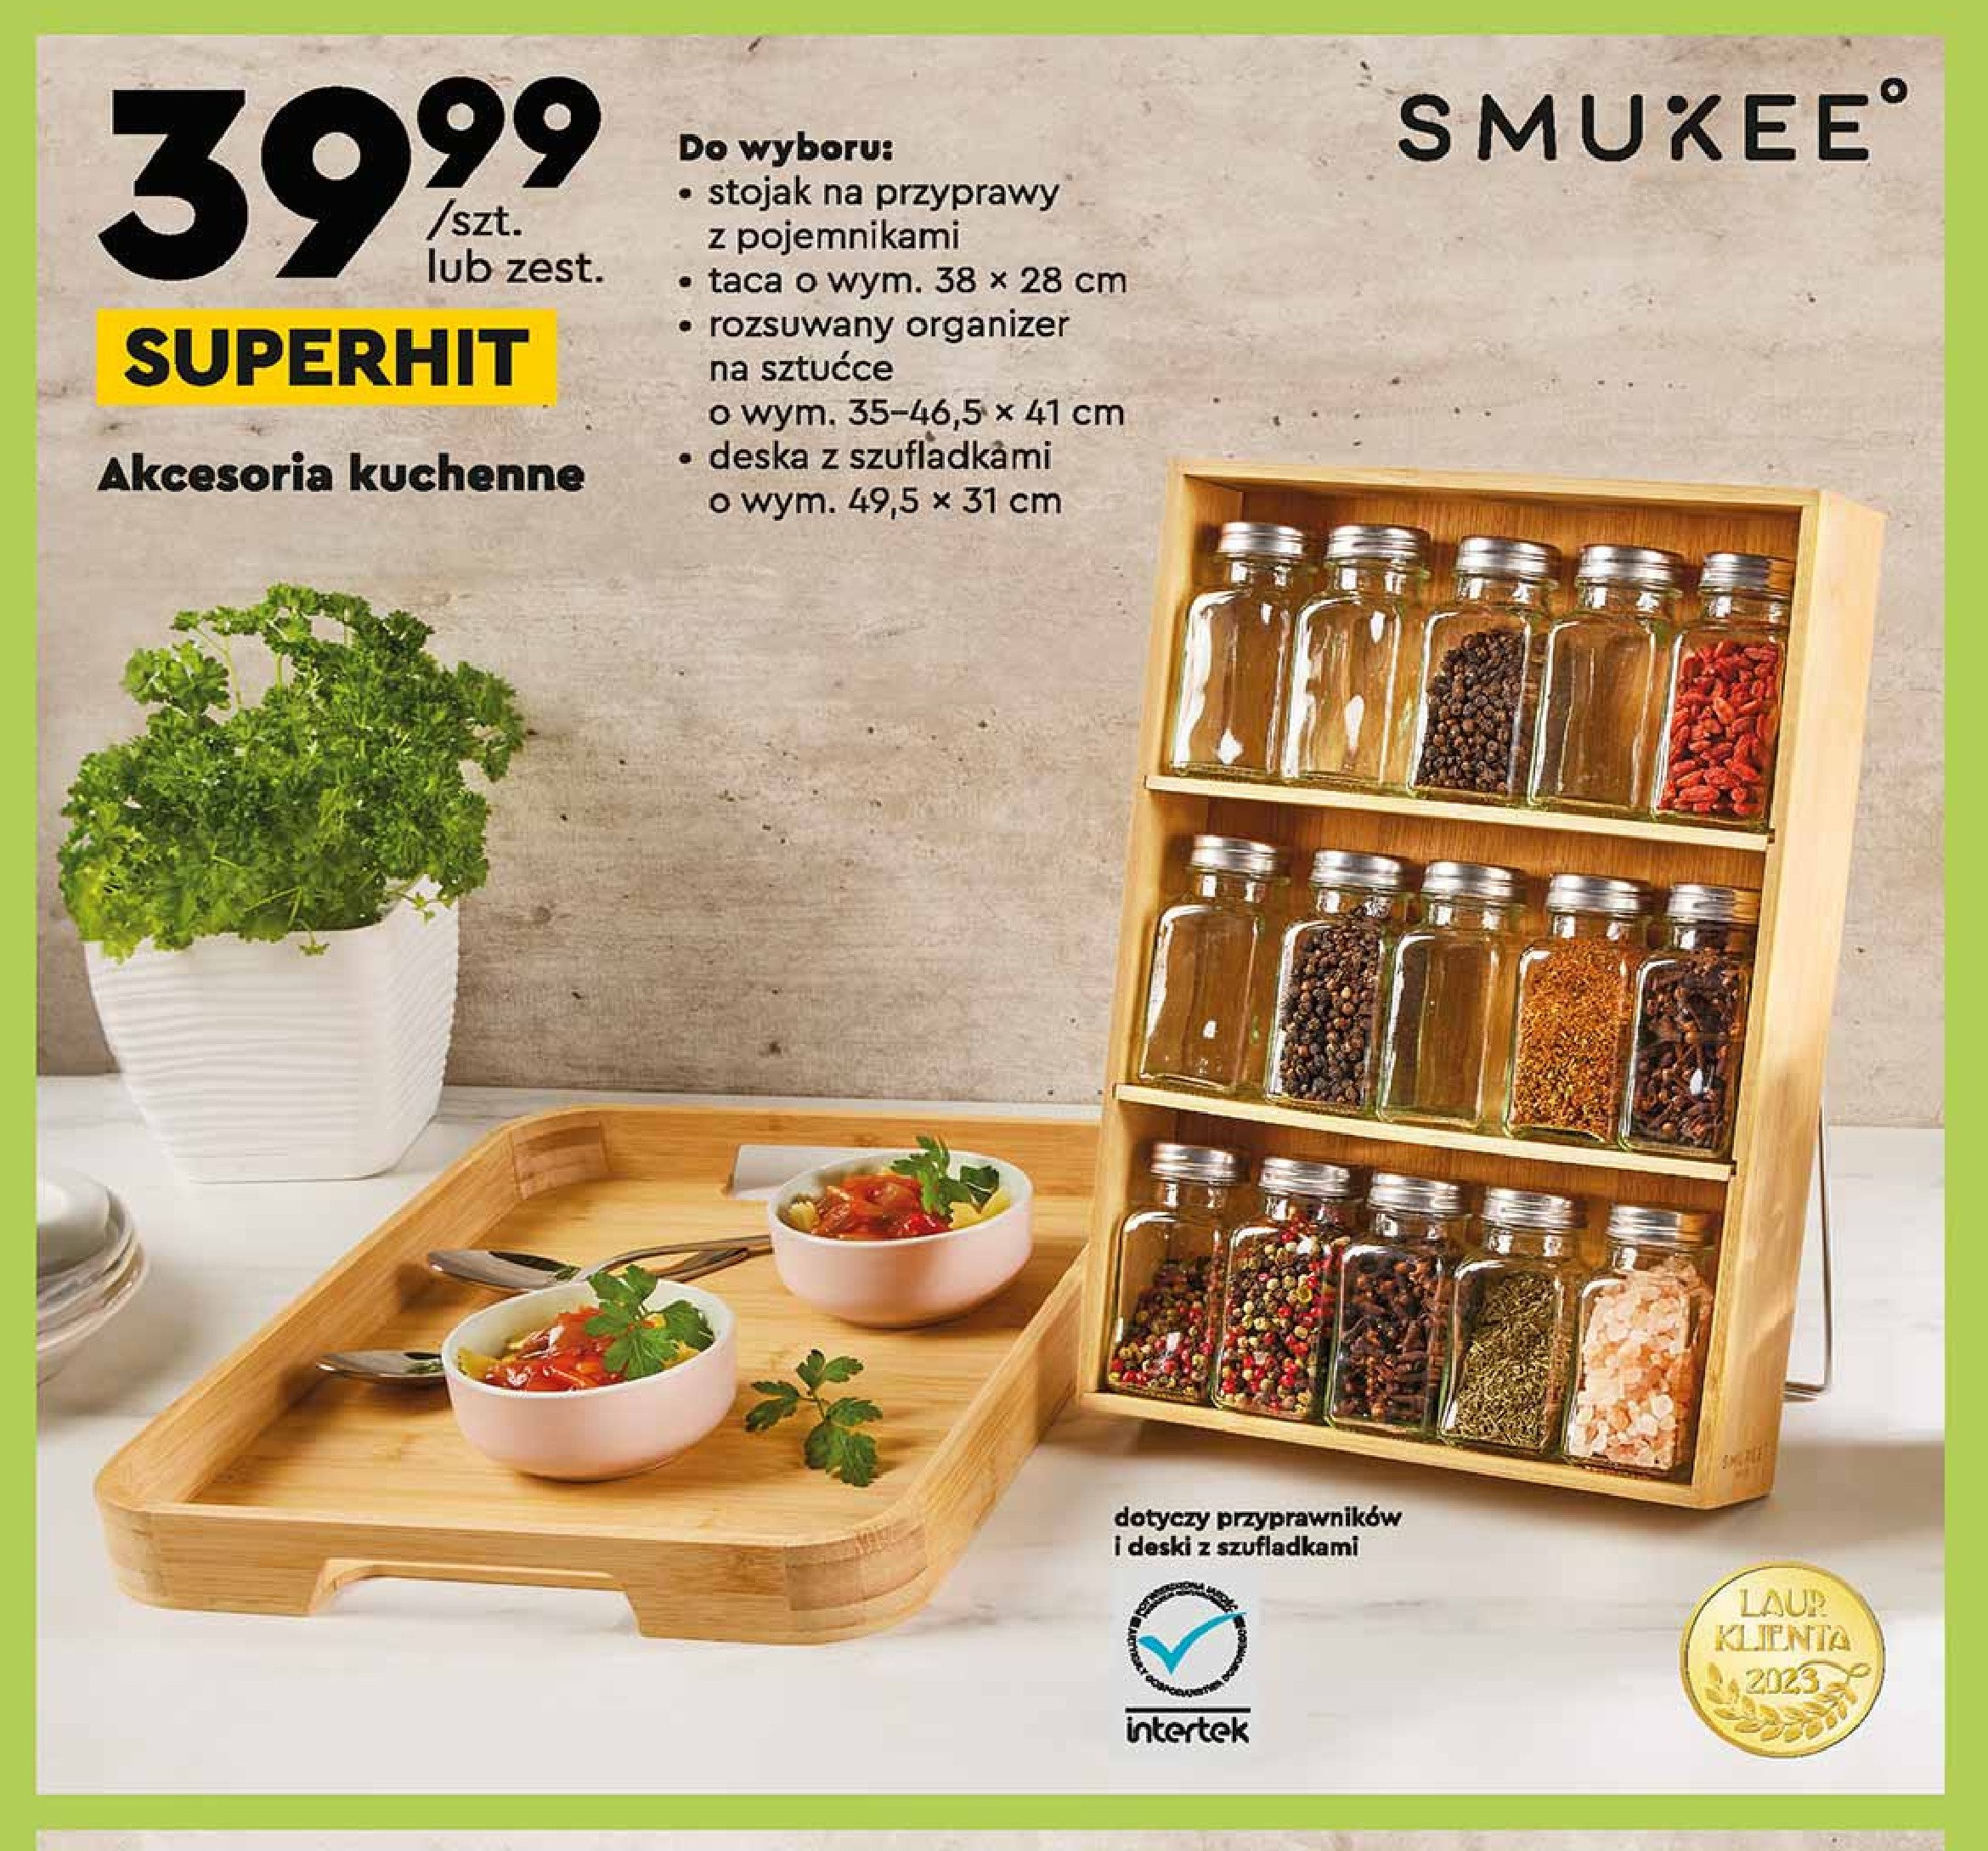 Deska z szufladkami 49.5 x 31 cm Smukee kitchen promocja